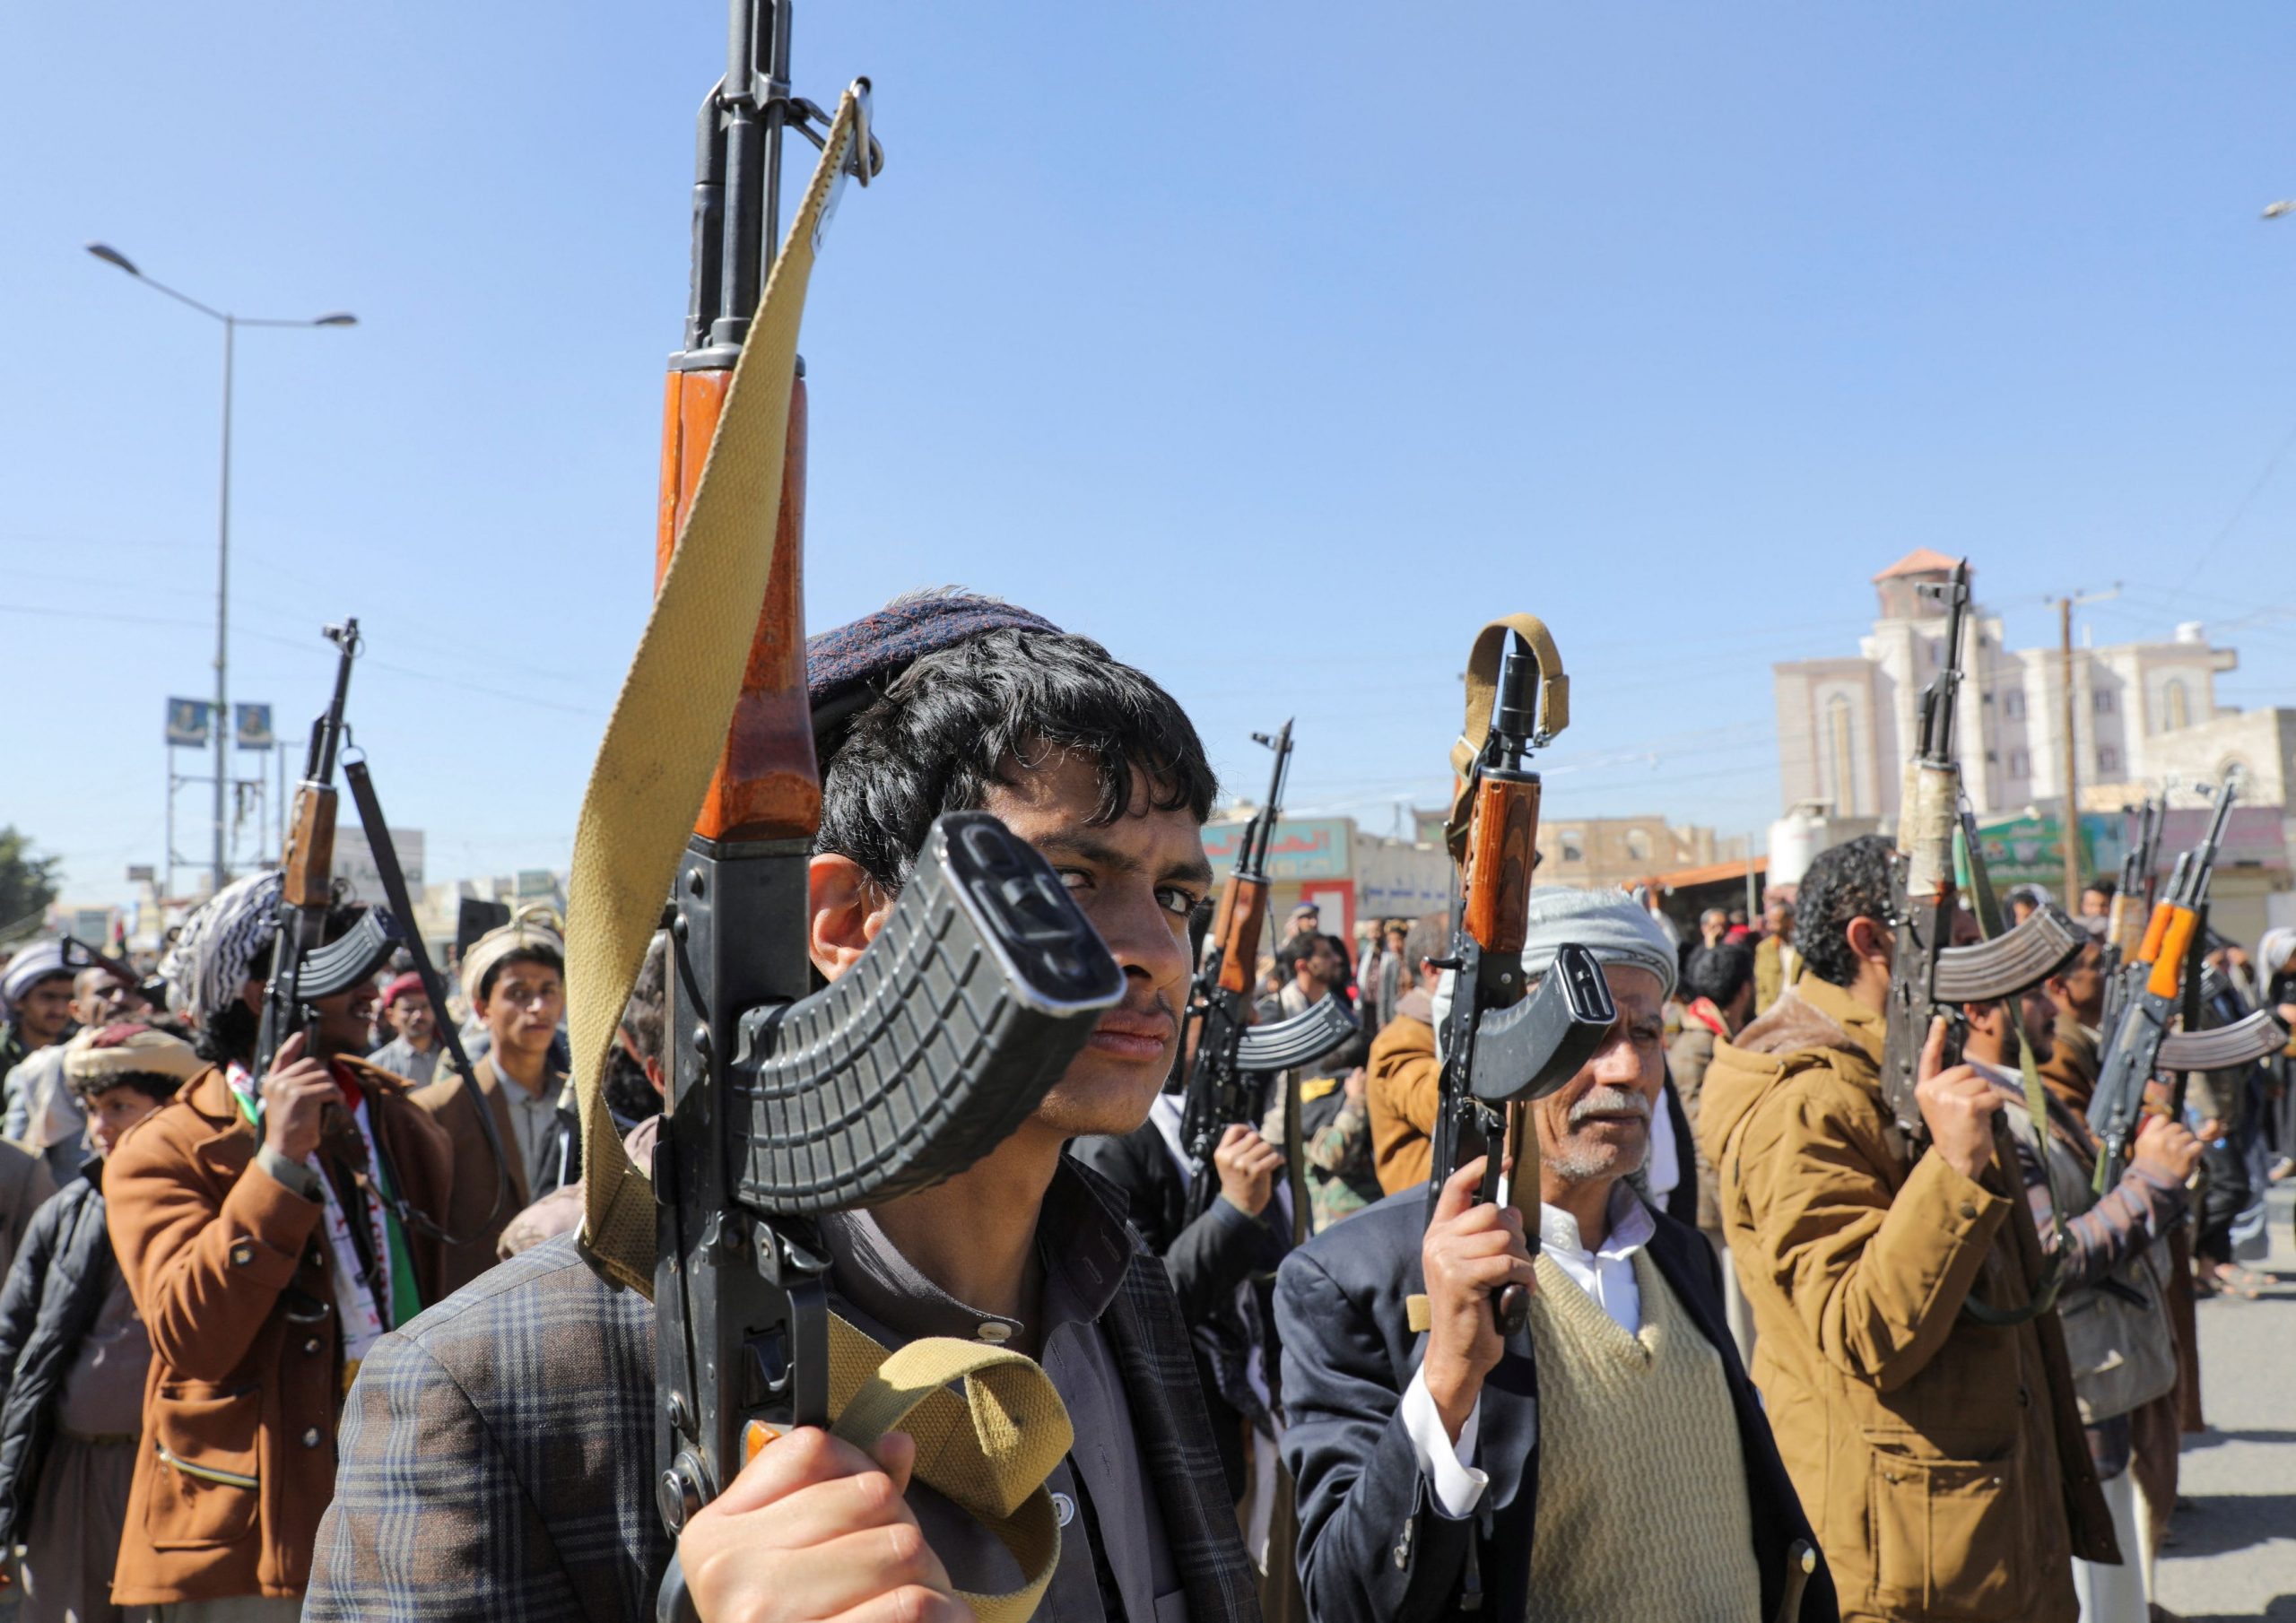 Χούθι: Ποιοι είναι οι αντάρτες στην Υεμένη που επιτίθενται σε πλοία στην Ερυθρά Θάλασσα;